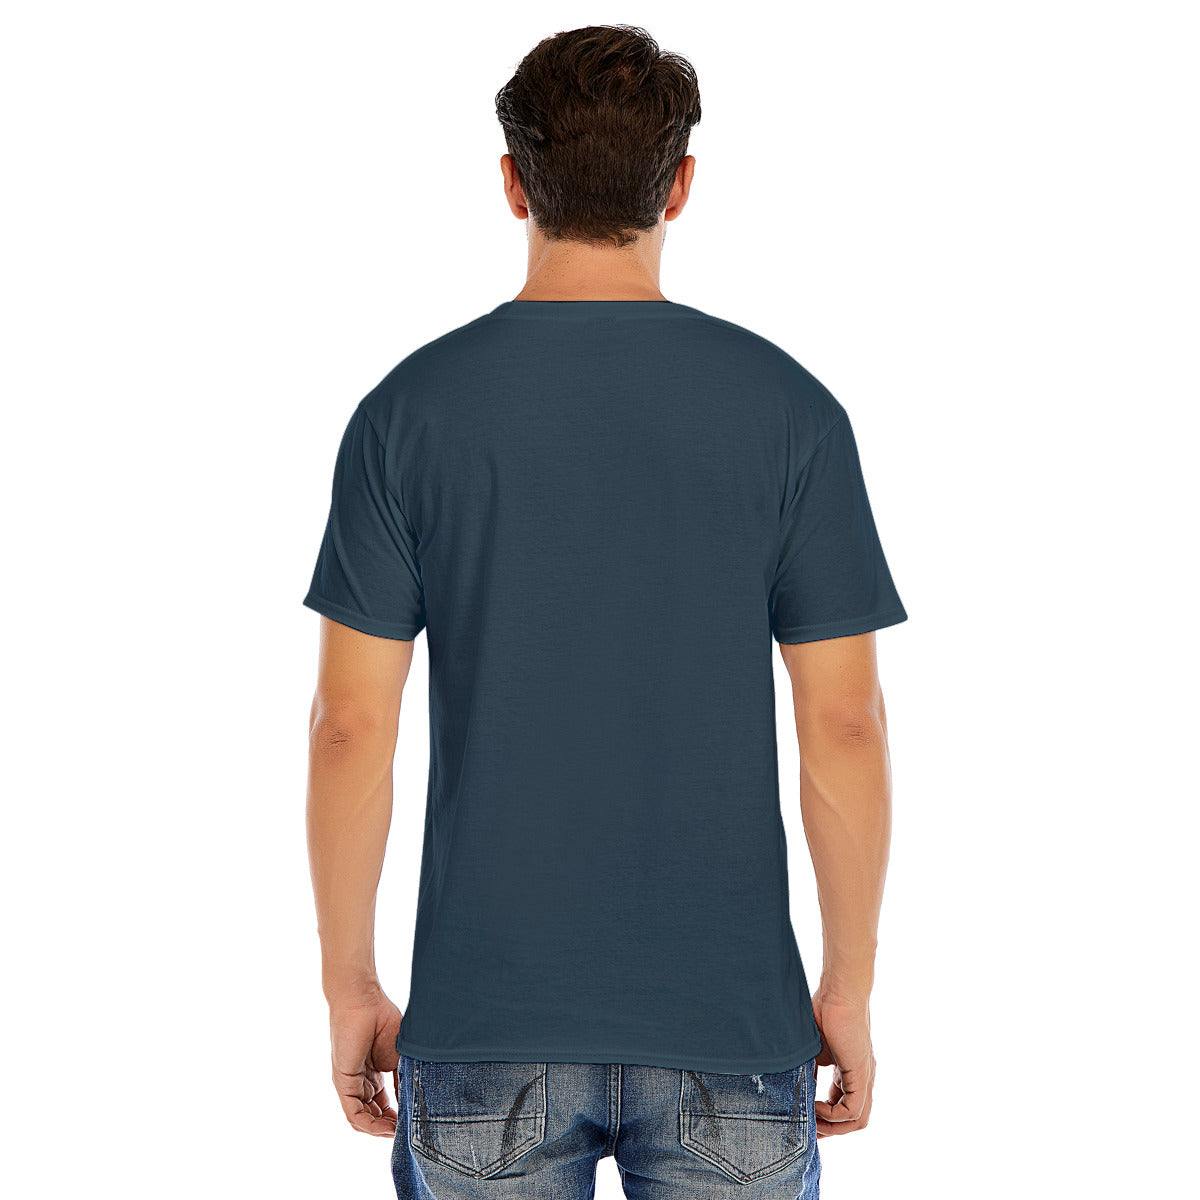 Cowboy 107 -- Unisex O-neck Short Sleeve T-shirt